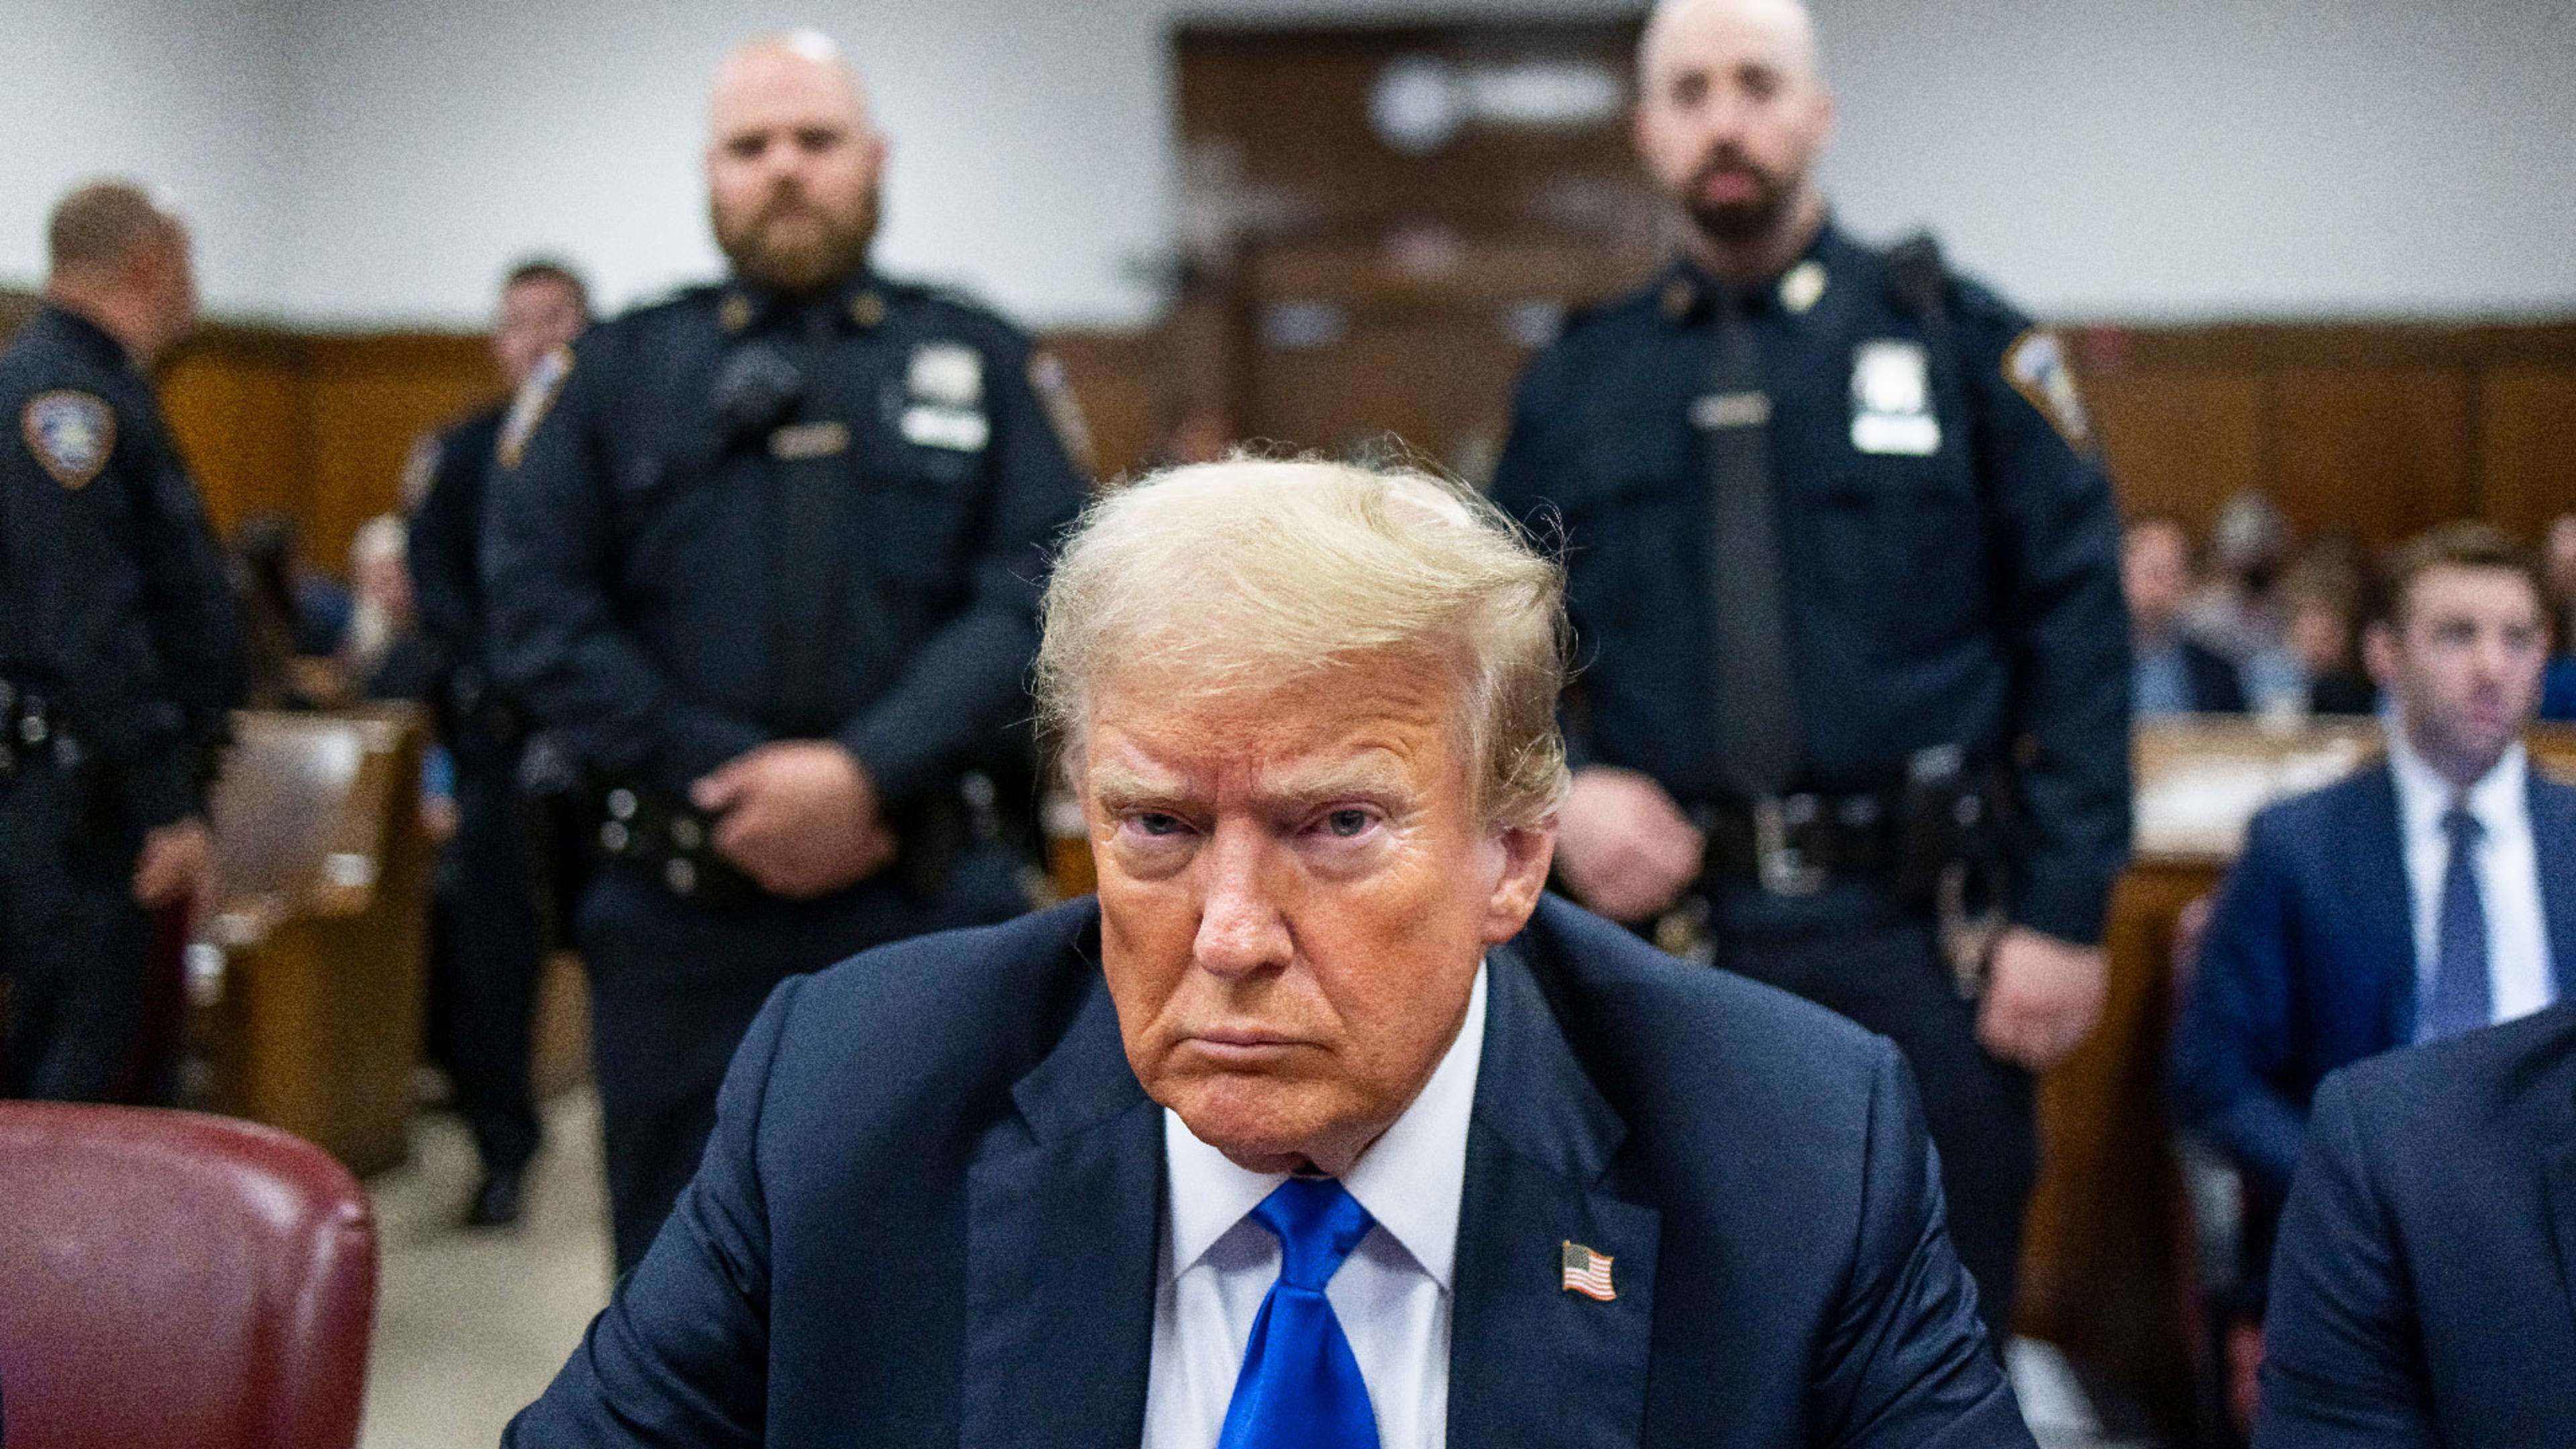 Ông Trump đối mặt nguy cơ bị tuyên án tù giam sau khi bị tòa án thành phố New York xác định phạm 34 tội danh.